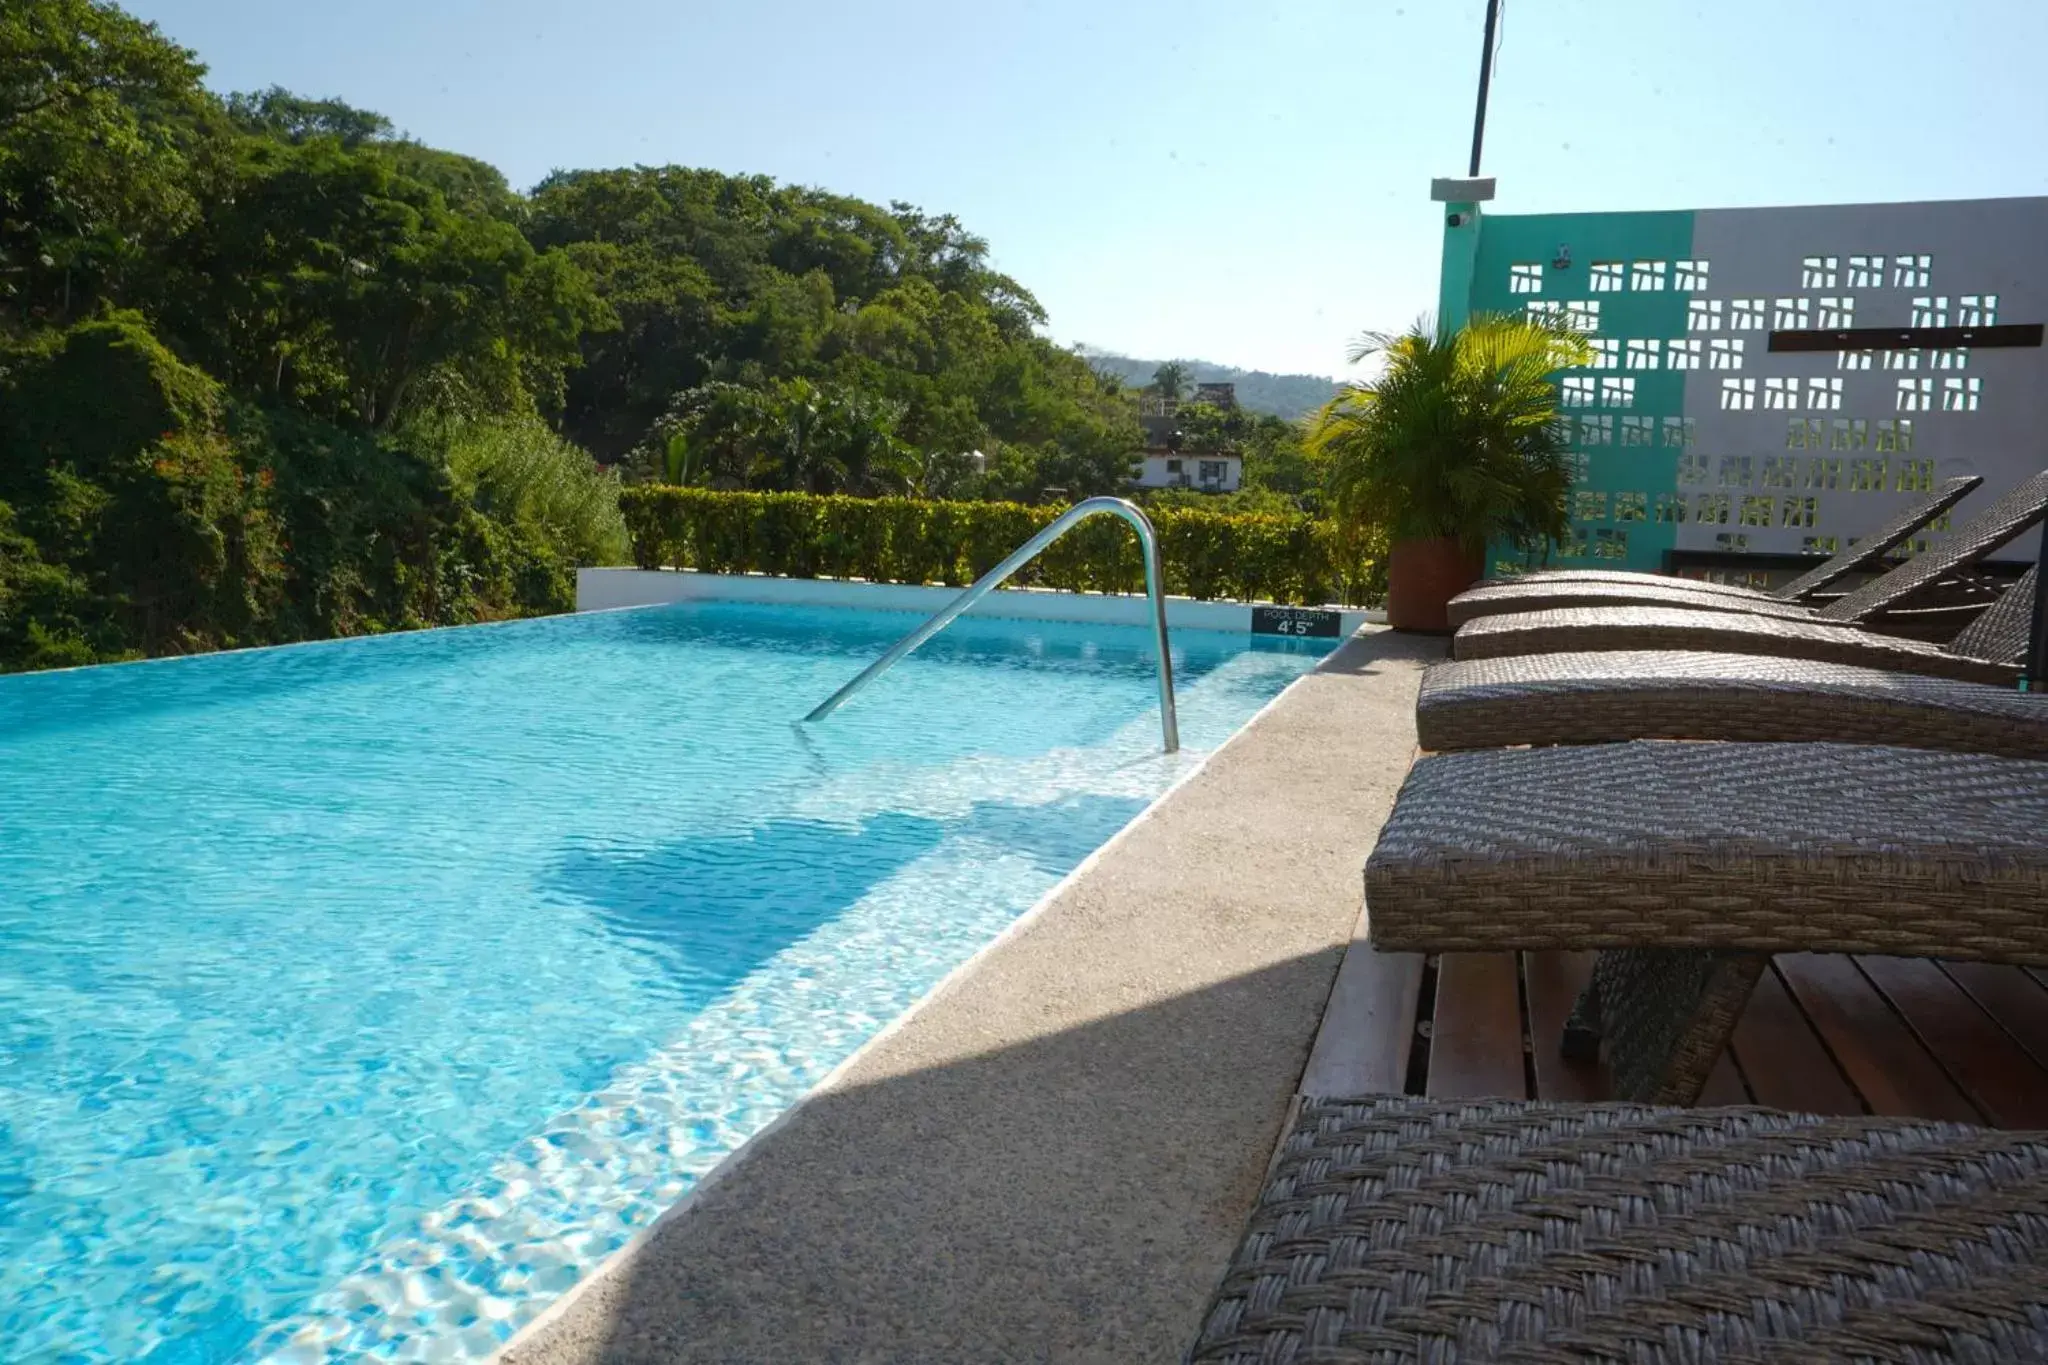 Swimming Pool in Puerto Sayulita